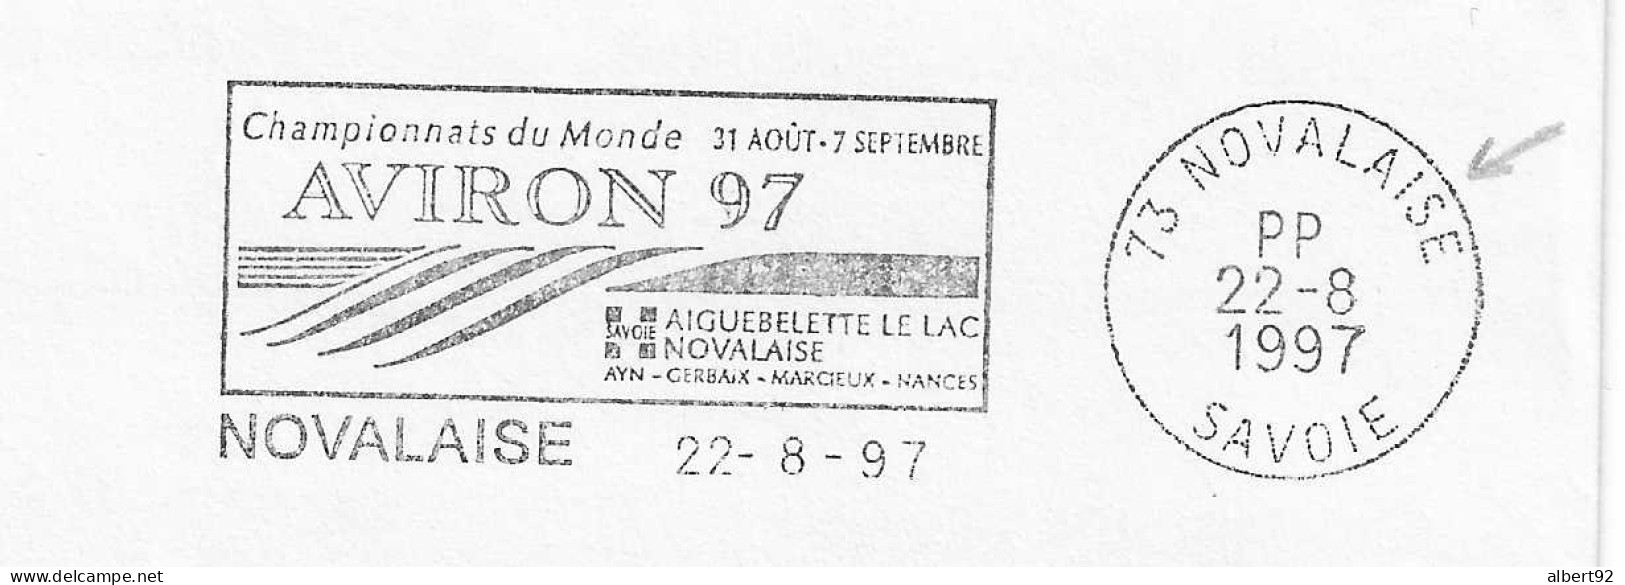 1997 Championnats Du Monde D'Aviron à Aiguebelette: Flamme Postale Port Payé (PP Dans Le Bloc Dateur) - Remo